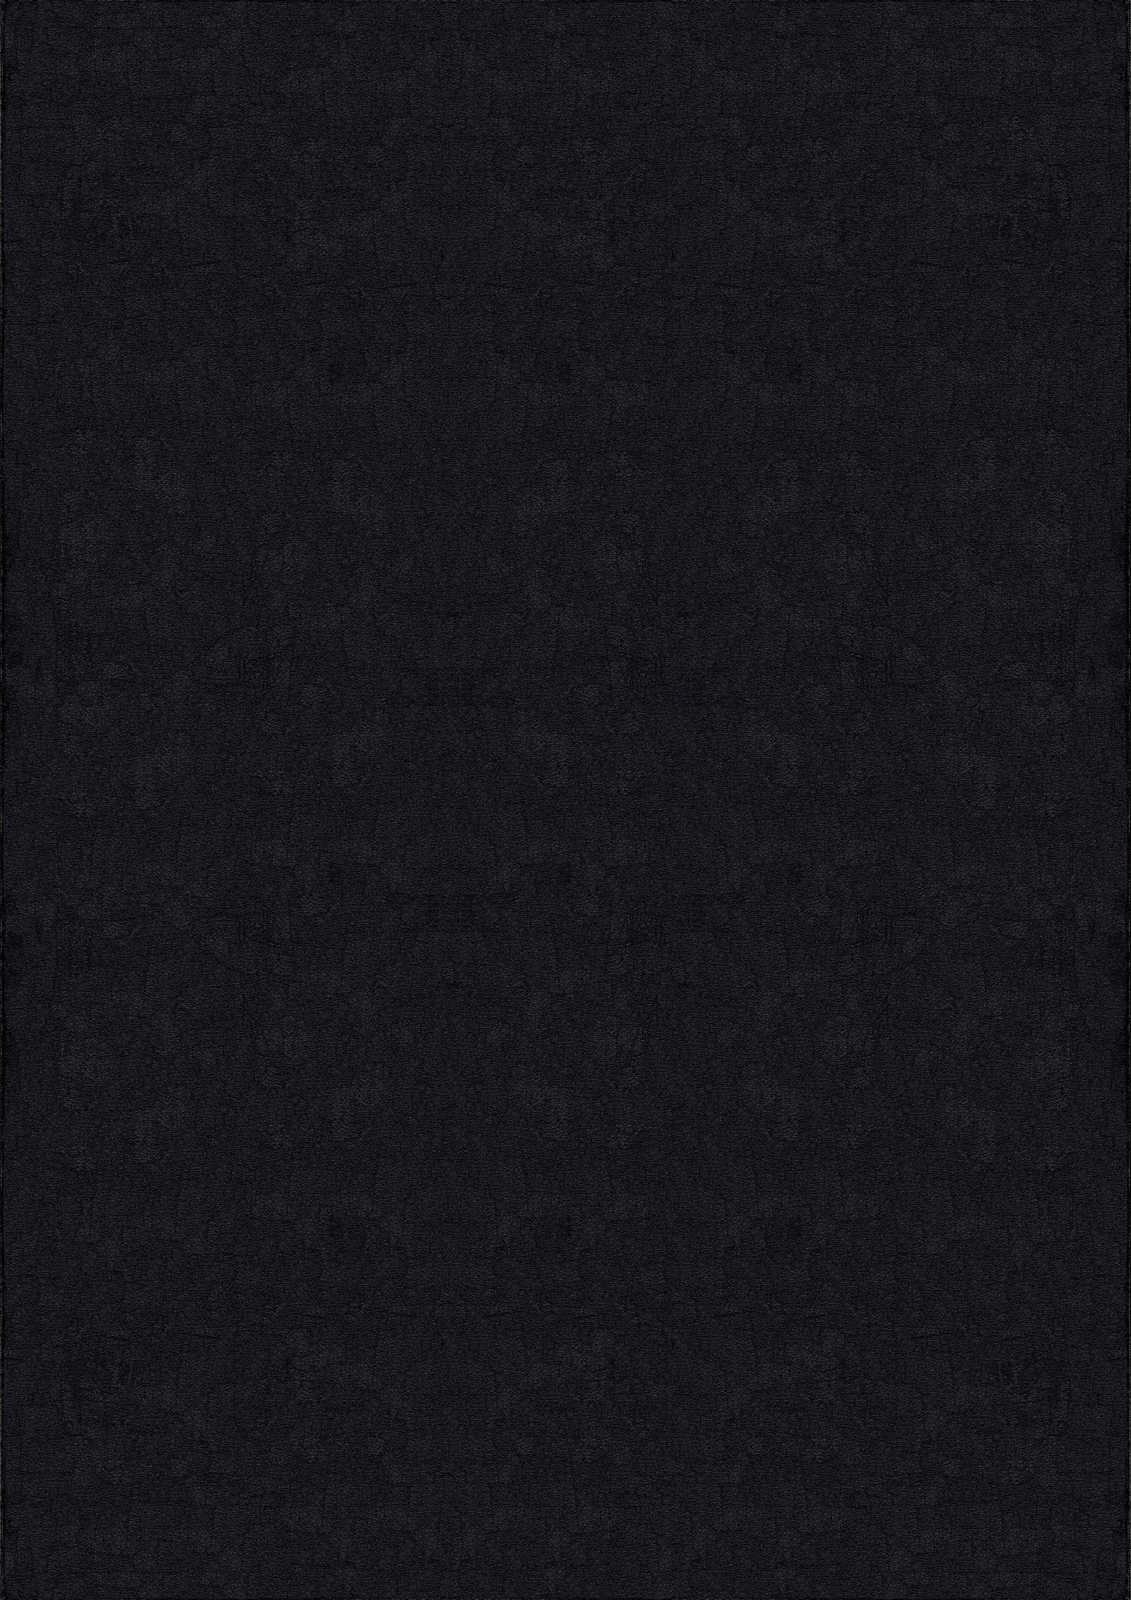             Tapis velouté à poils longs noir - 230 x 160 cm
        